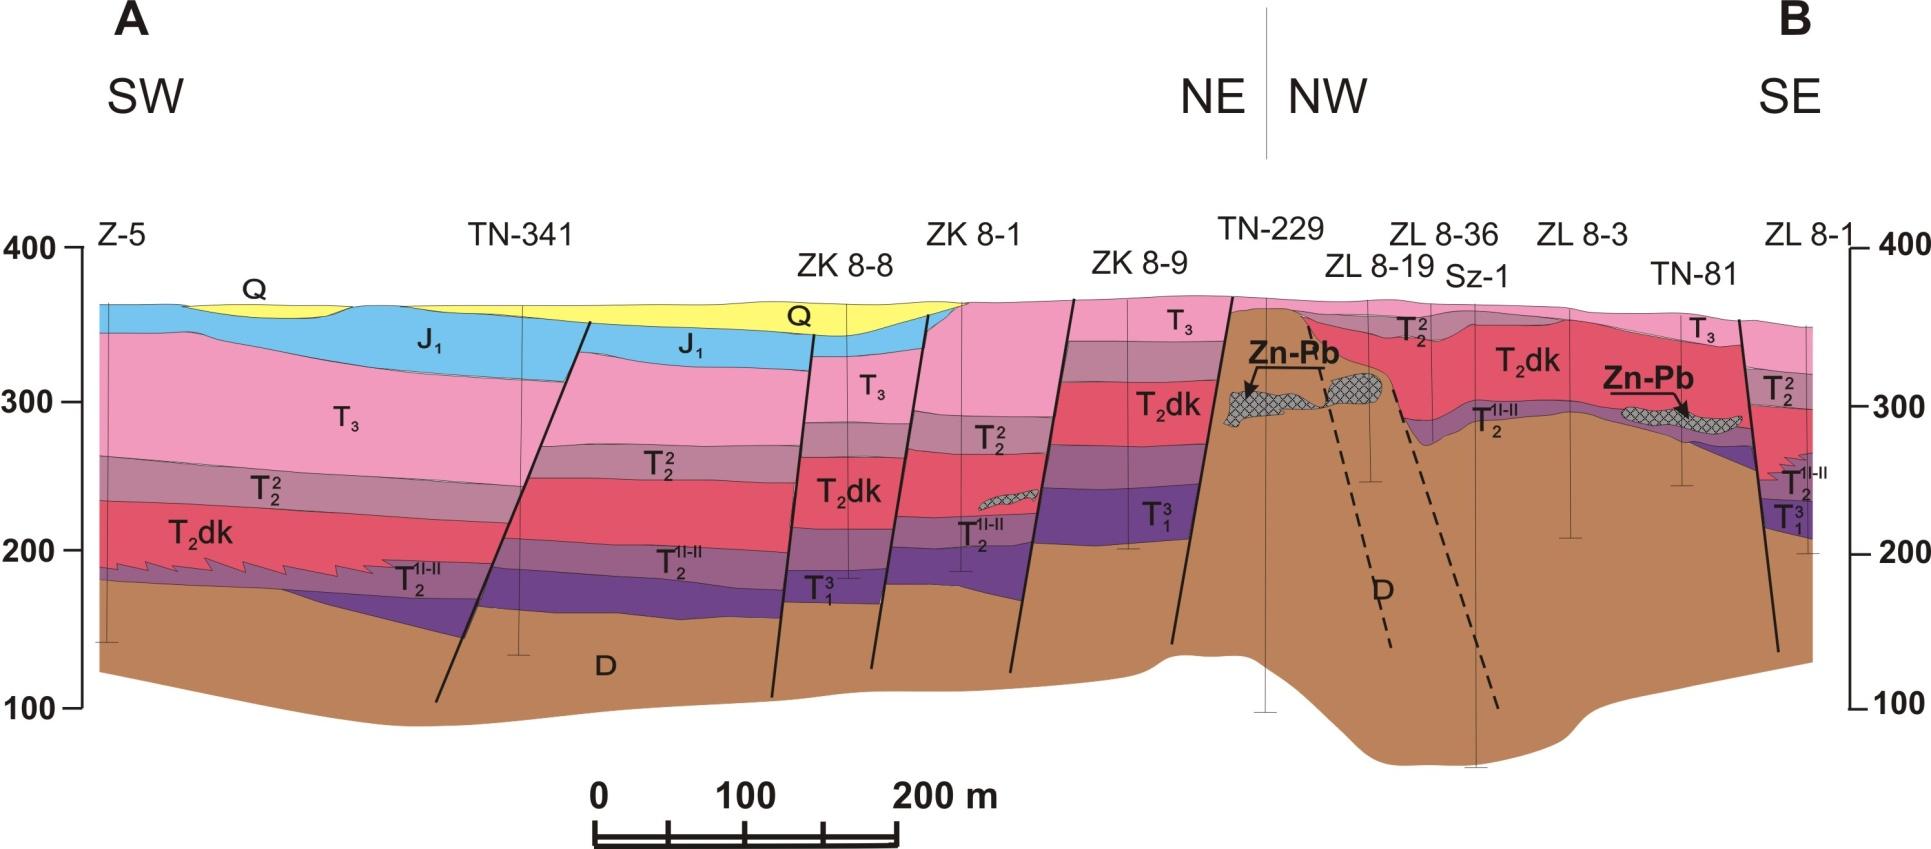 Przekrój geologiczny przez złoże Zawiercie I (rejon NW) Q - plejstocen, J 1 - dolna jura, trias; T 3 kajper, T 2 2 dolomity diploporowe, T